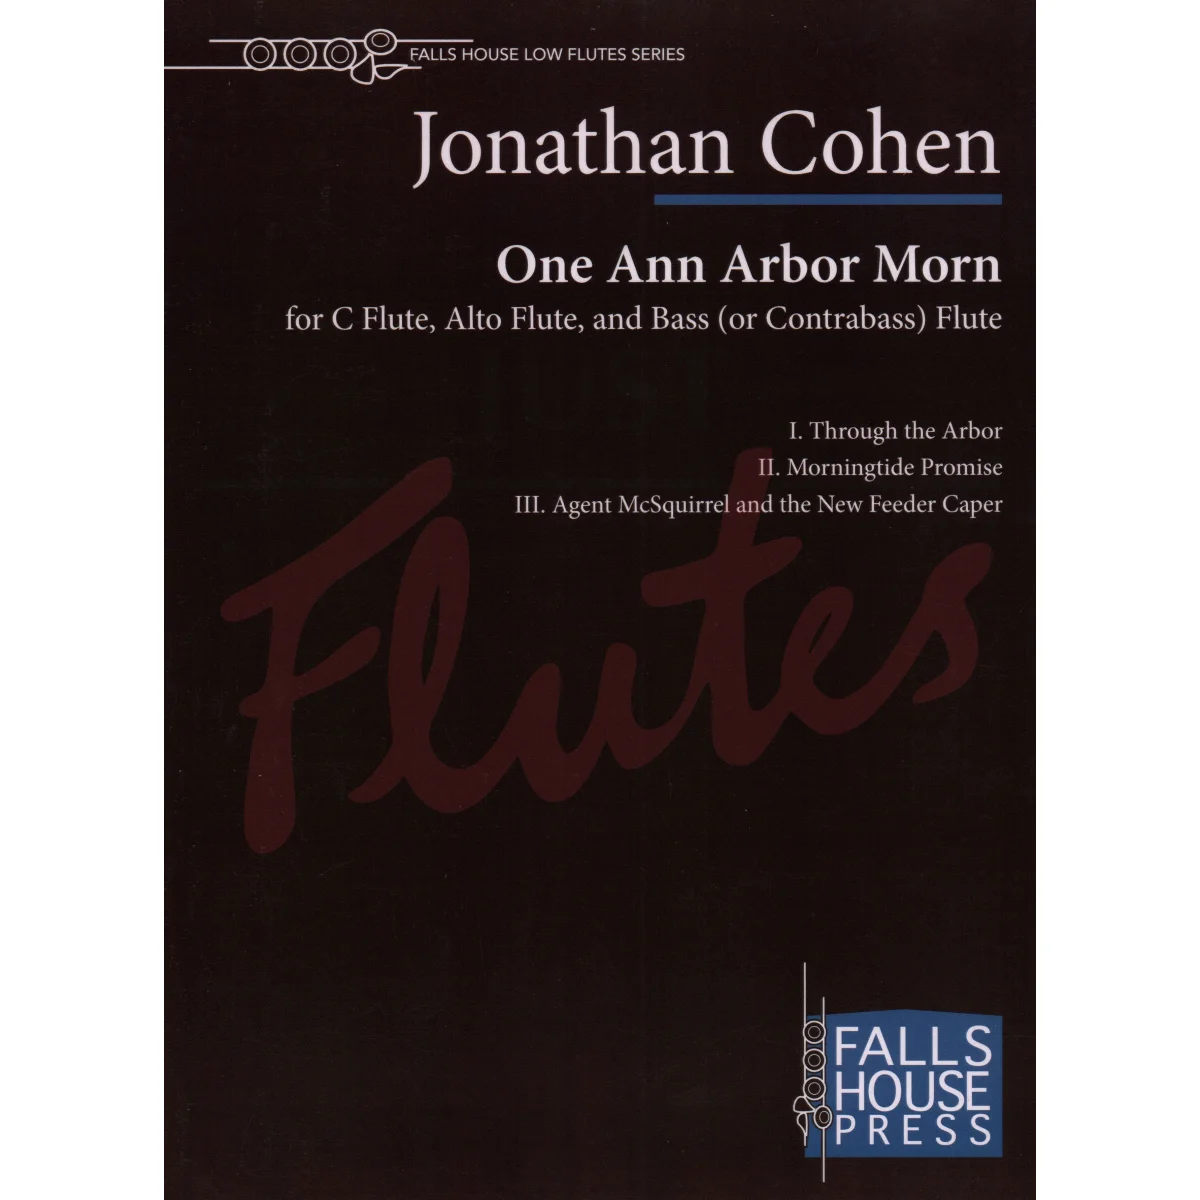 One Ann Arbor Morn for Flute, Alto Flute, Bass Flute or Contrabass Flute